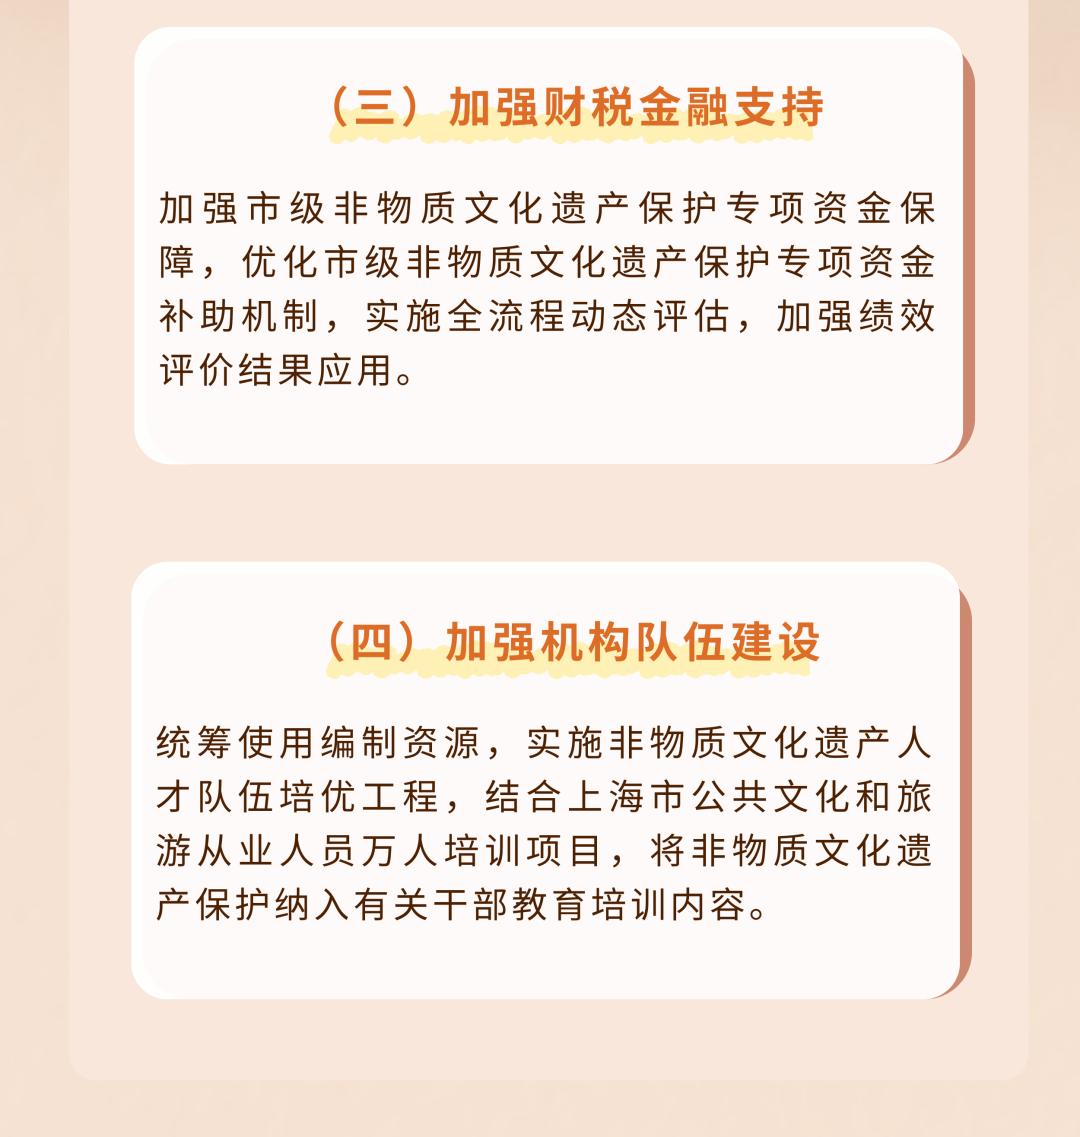 上海市关于进一步加强非物质文化遗产保护工作的实施意见9.png